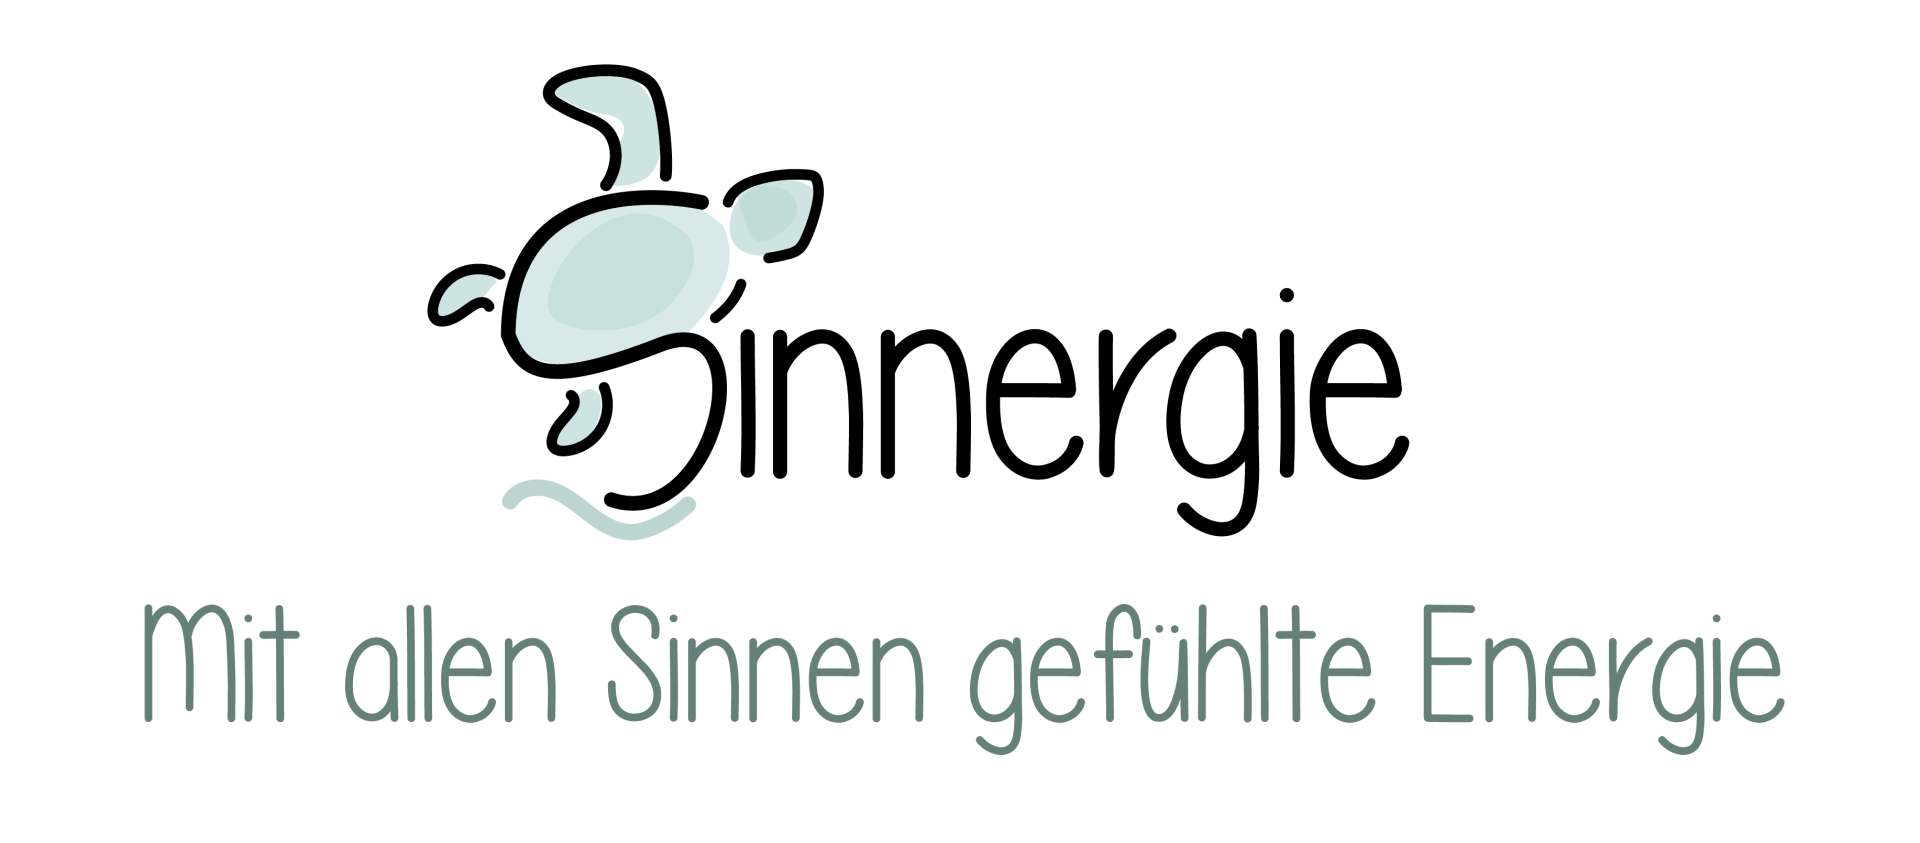 Sinnergie Logo